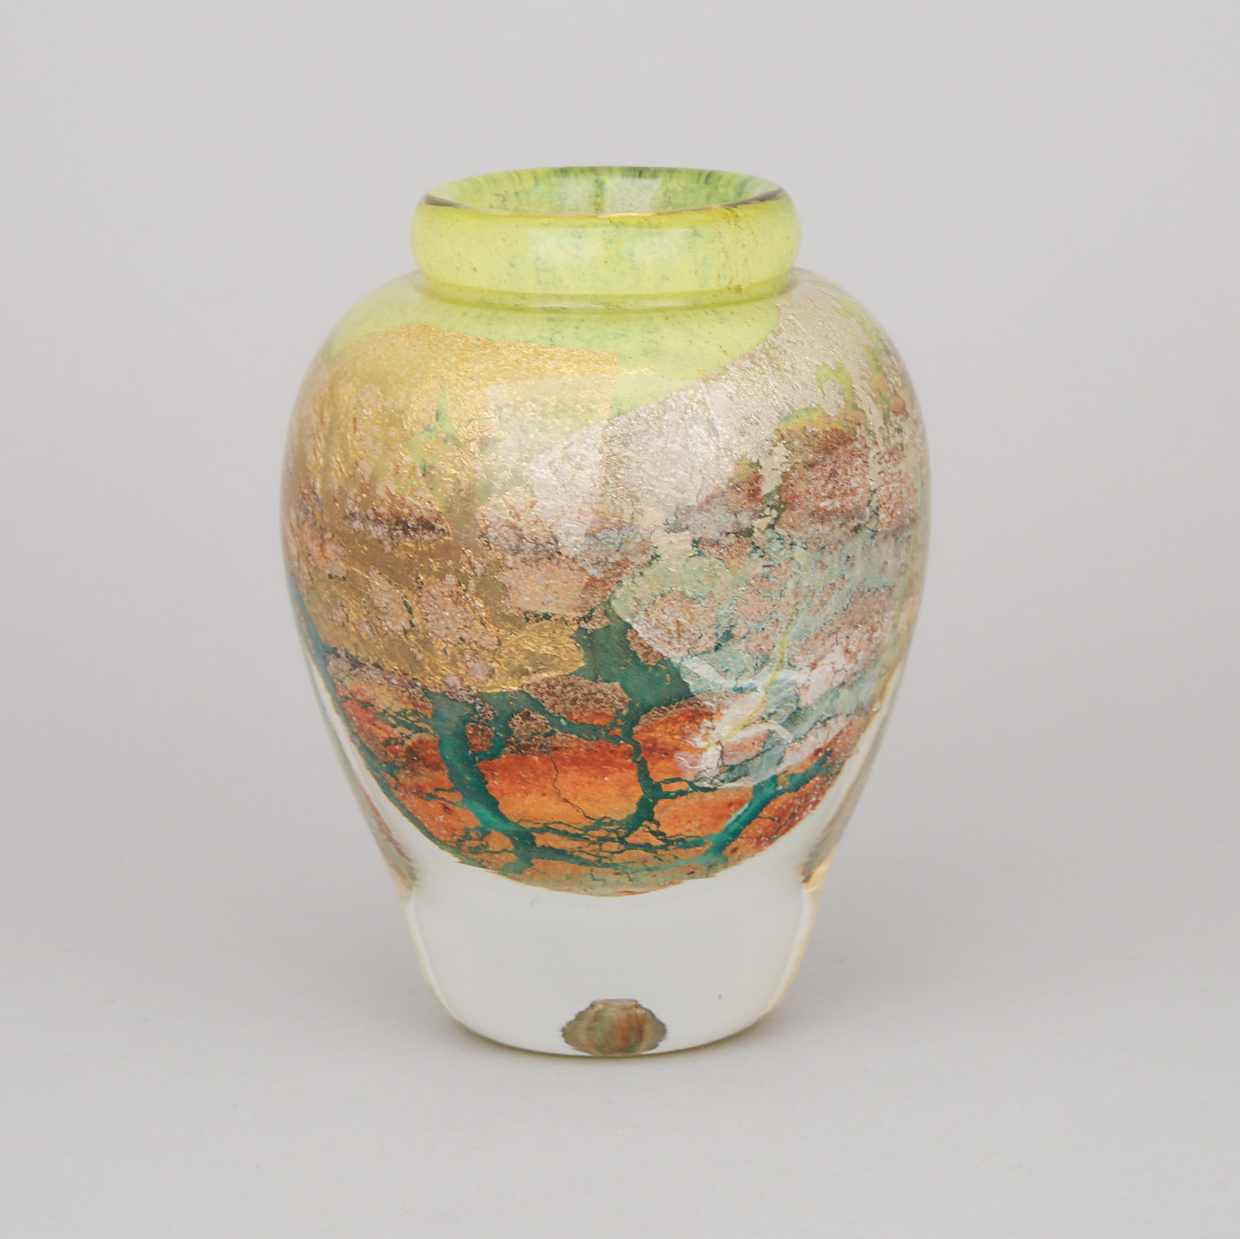 Jean-Claude Novaro (French, 1943-2014), Glass Vase, c.2000